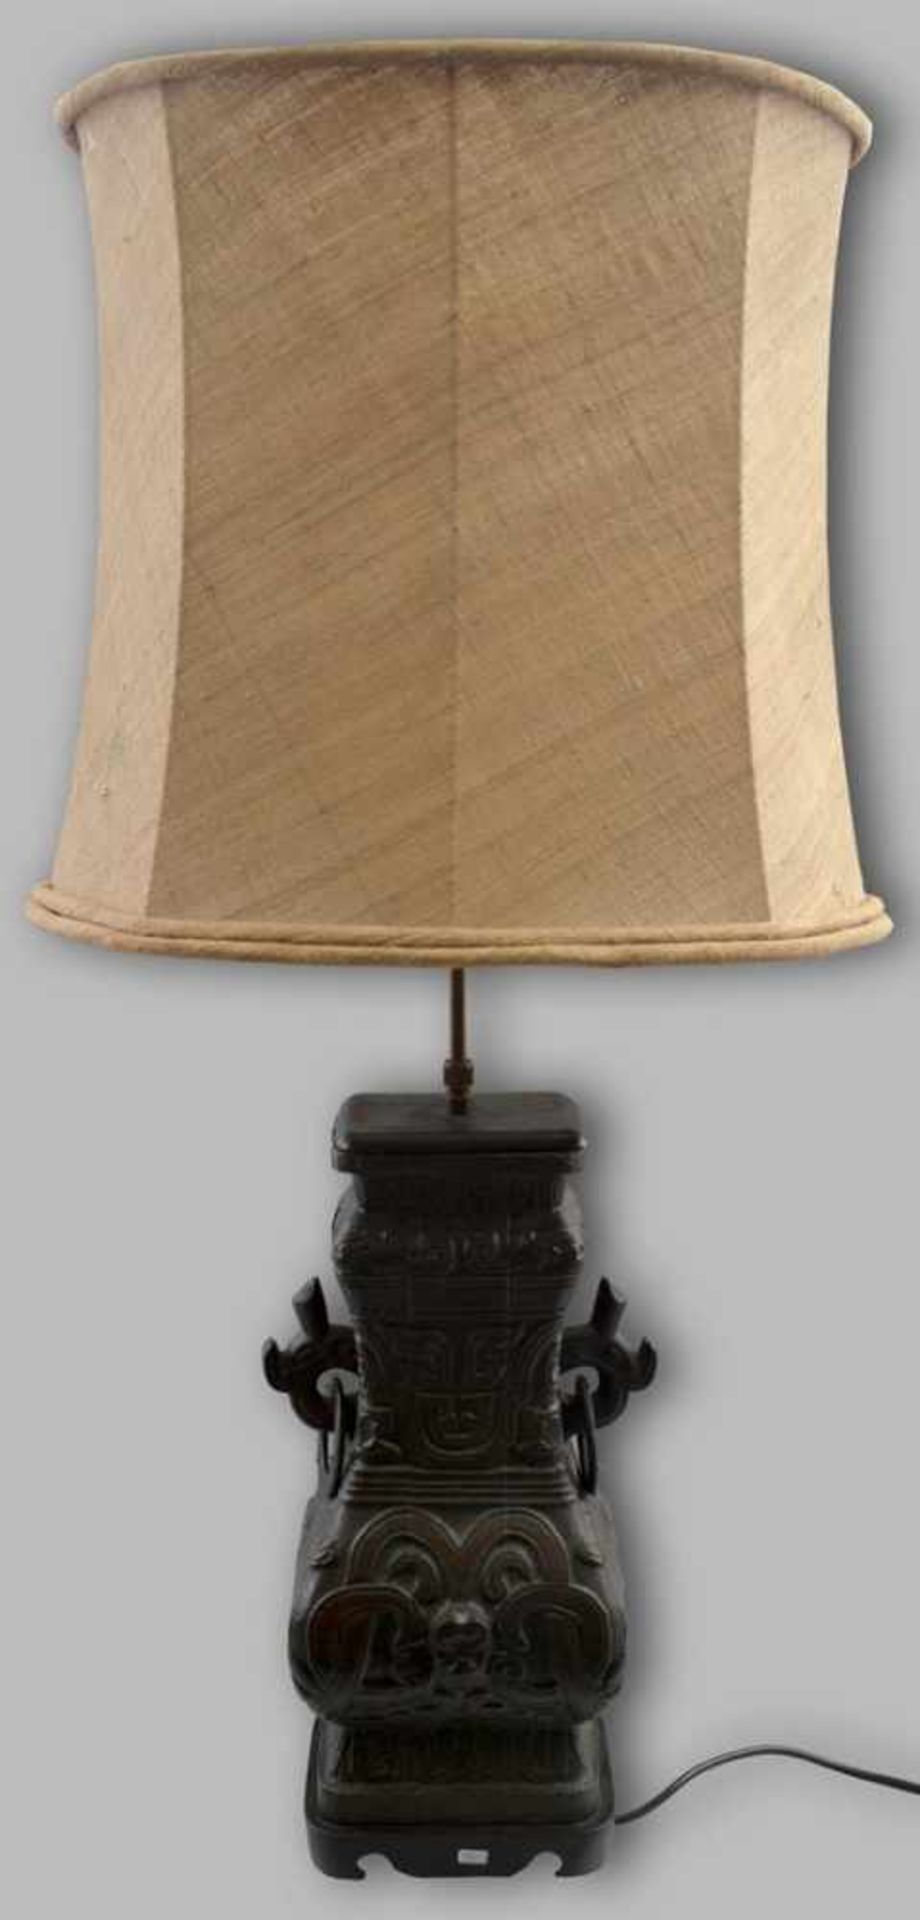 Tischlampe 2-lichtig, quadratischer Fuß, Bronze, mit asiatischen Ornamenten verziert, ovaler